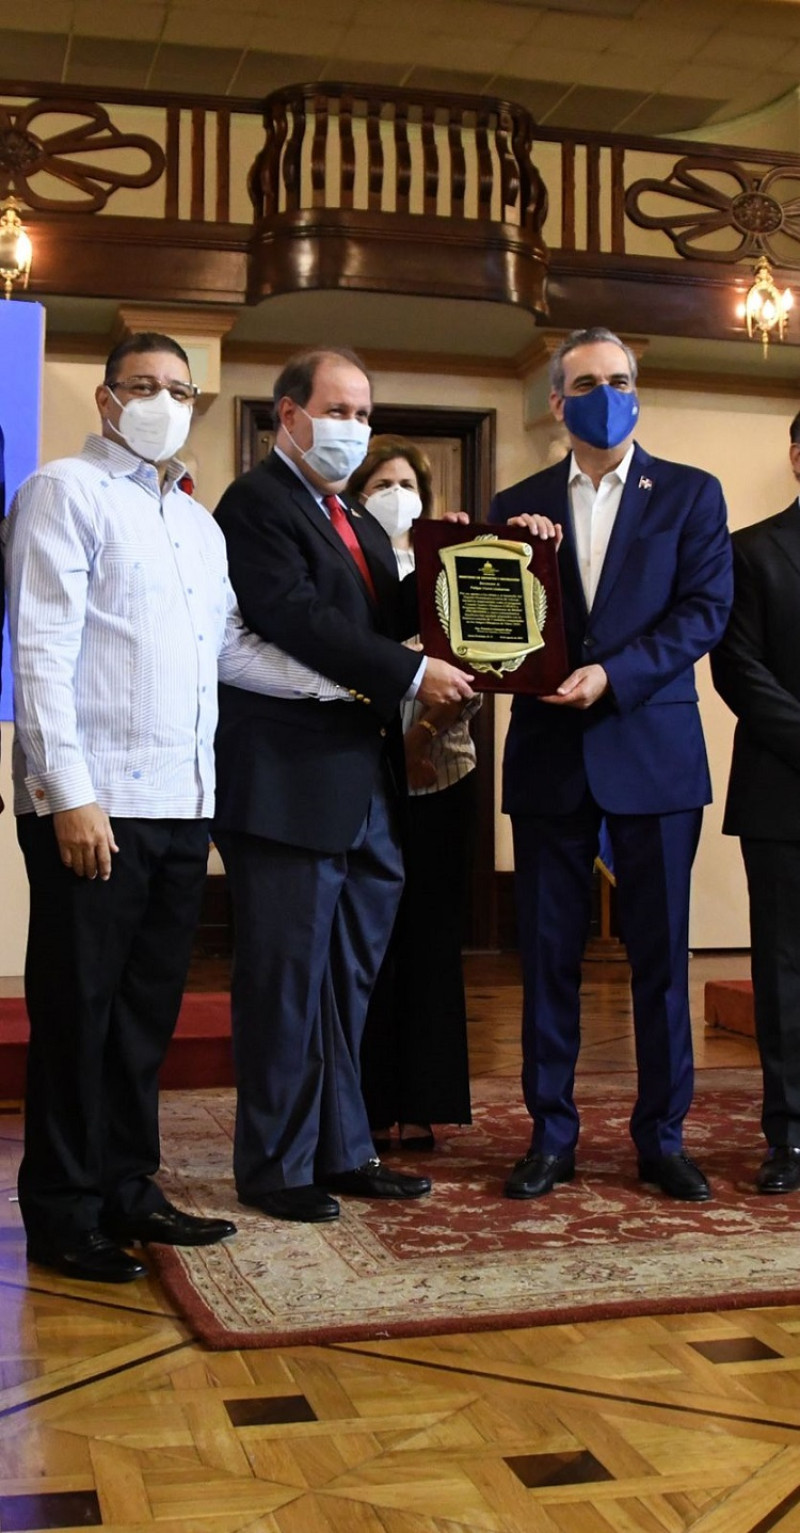 El presidente Luis Abinader entrega una placa de reconocimiento al empresario Felipe Vicini junto al ministro de deportes Francisco Camacho.